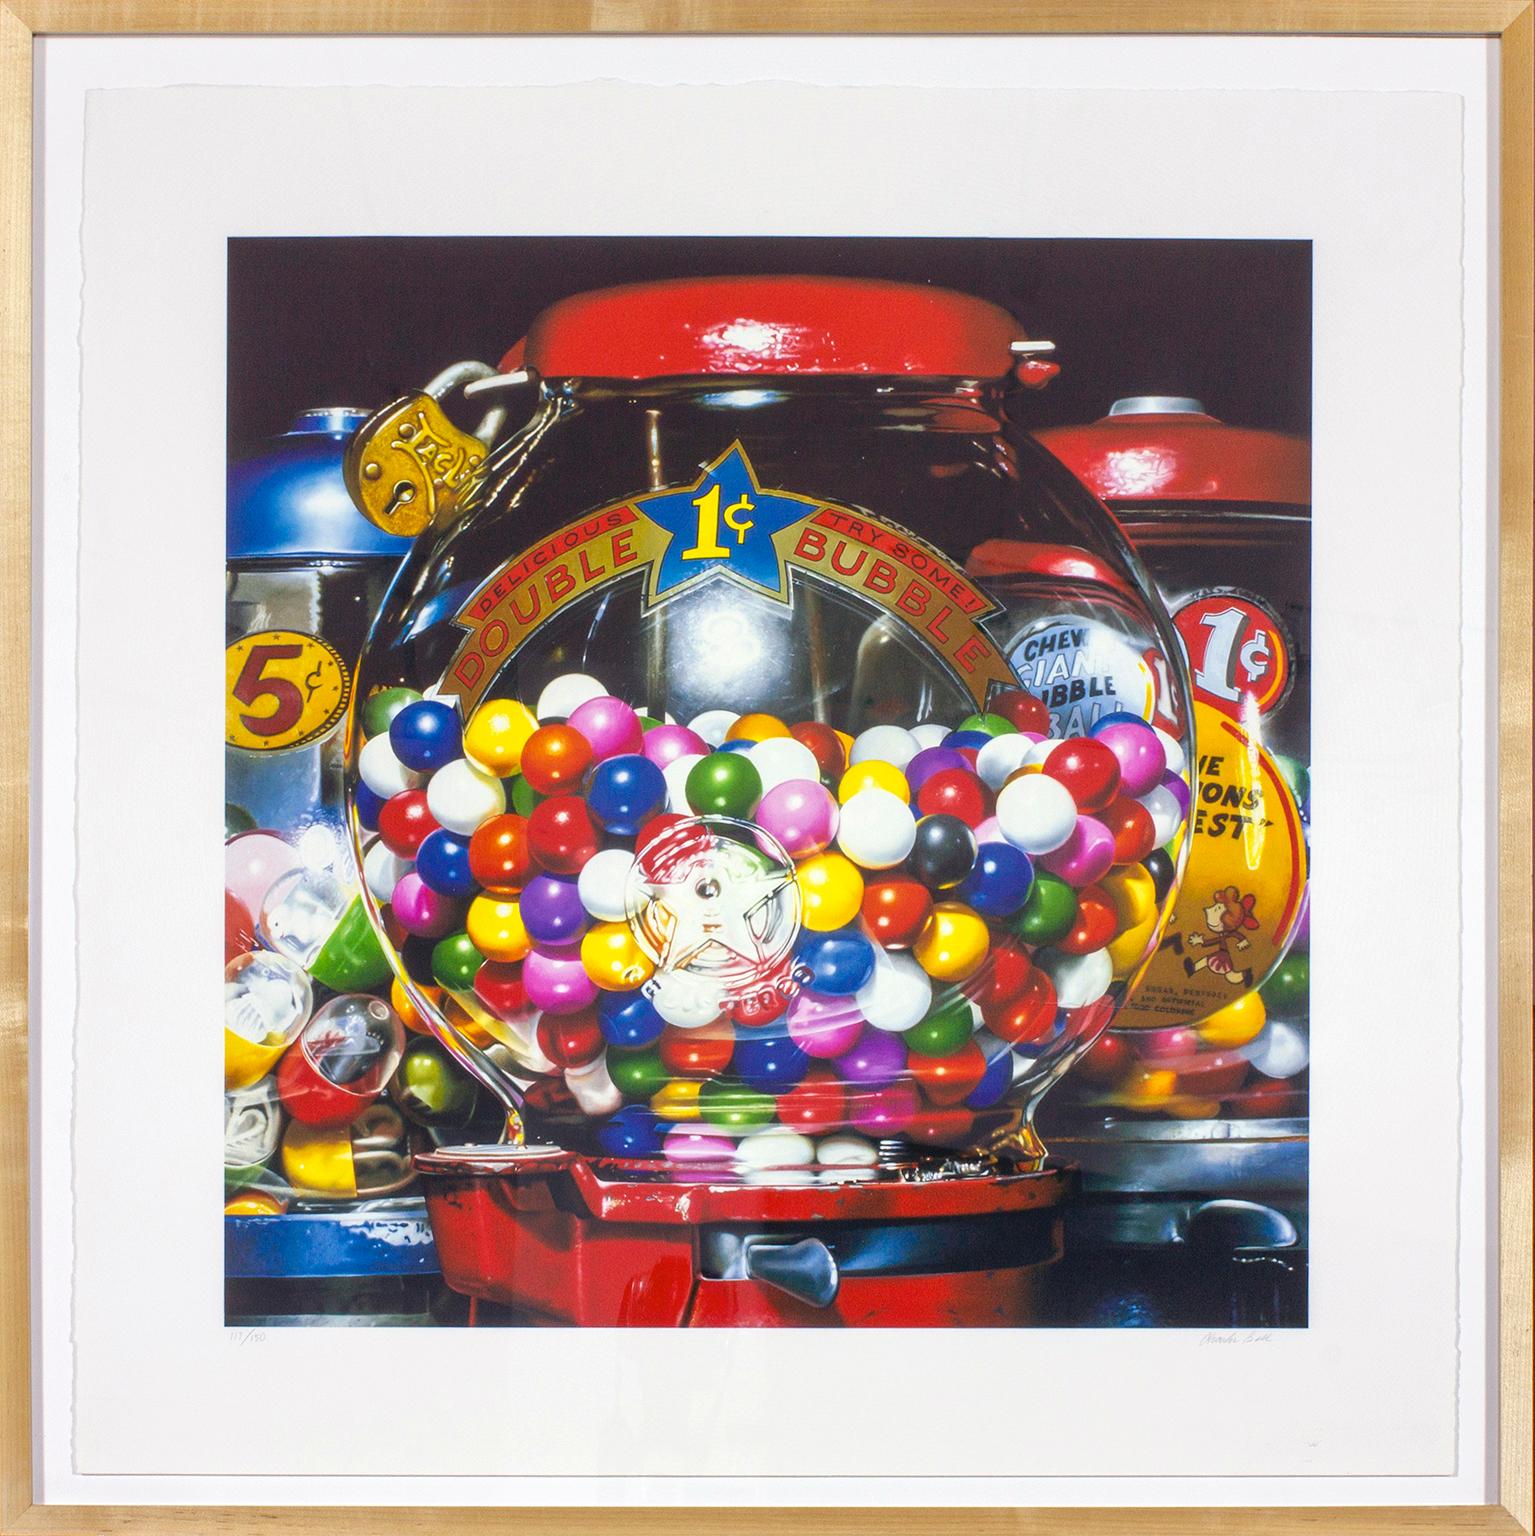 "Double Bubble" Siebdruck eines Kaugummiautomaten des fotorealistischen Malers Charles Bell. Von Hand nummeriert 117/150 in Bleistift in der linken unteren Ecke. Handsigniert Charles Bell in Bleistift in der rechten unteren Ecke. Bildgröße 33 x 28,5